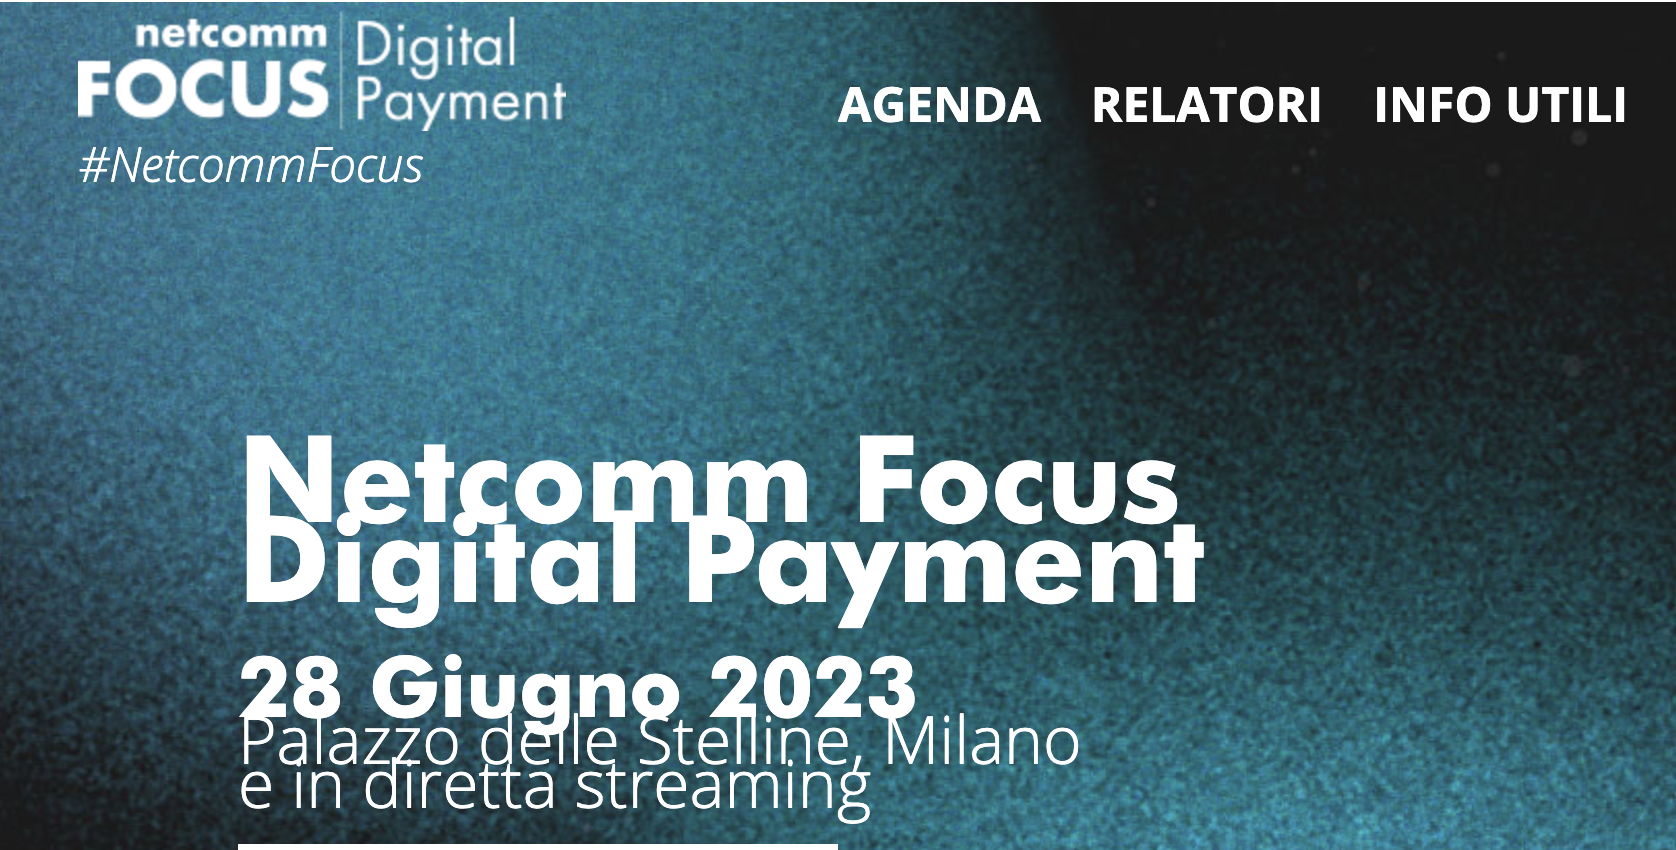 Netcomm Focus Digital Payment: dà appuntamento al 28 giugno